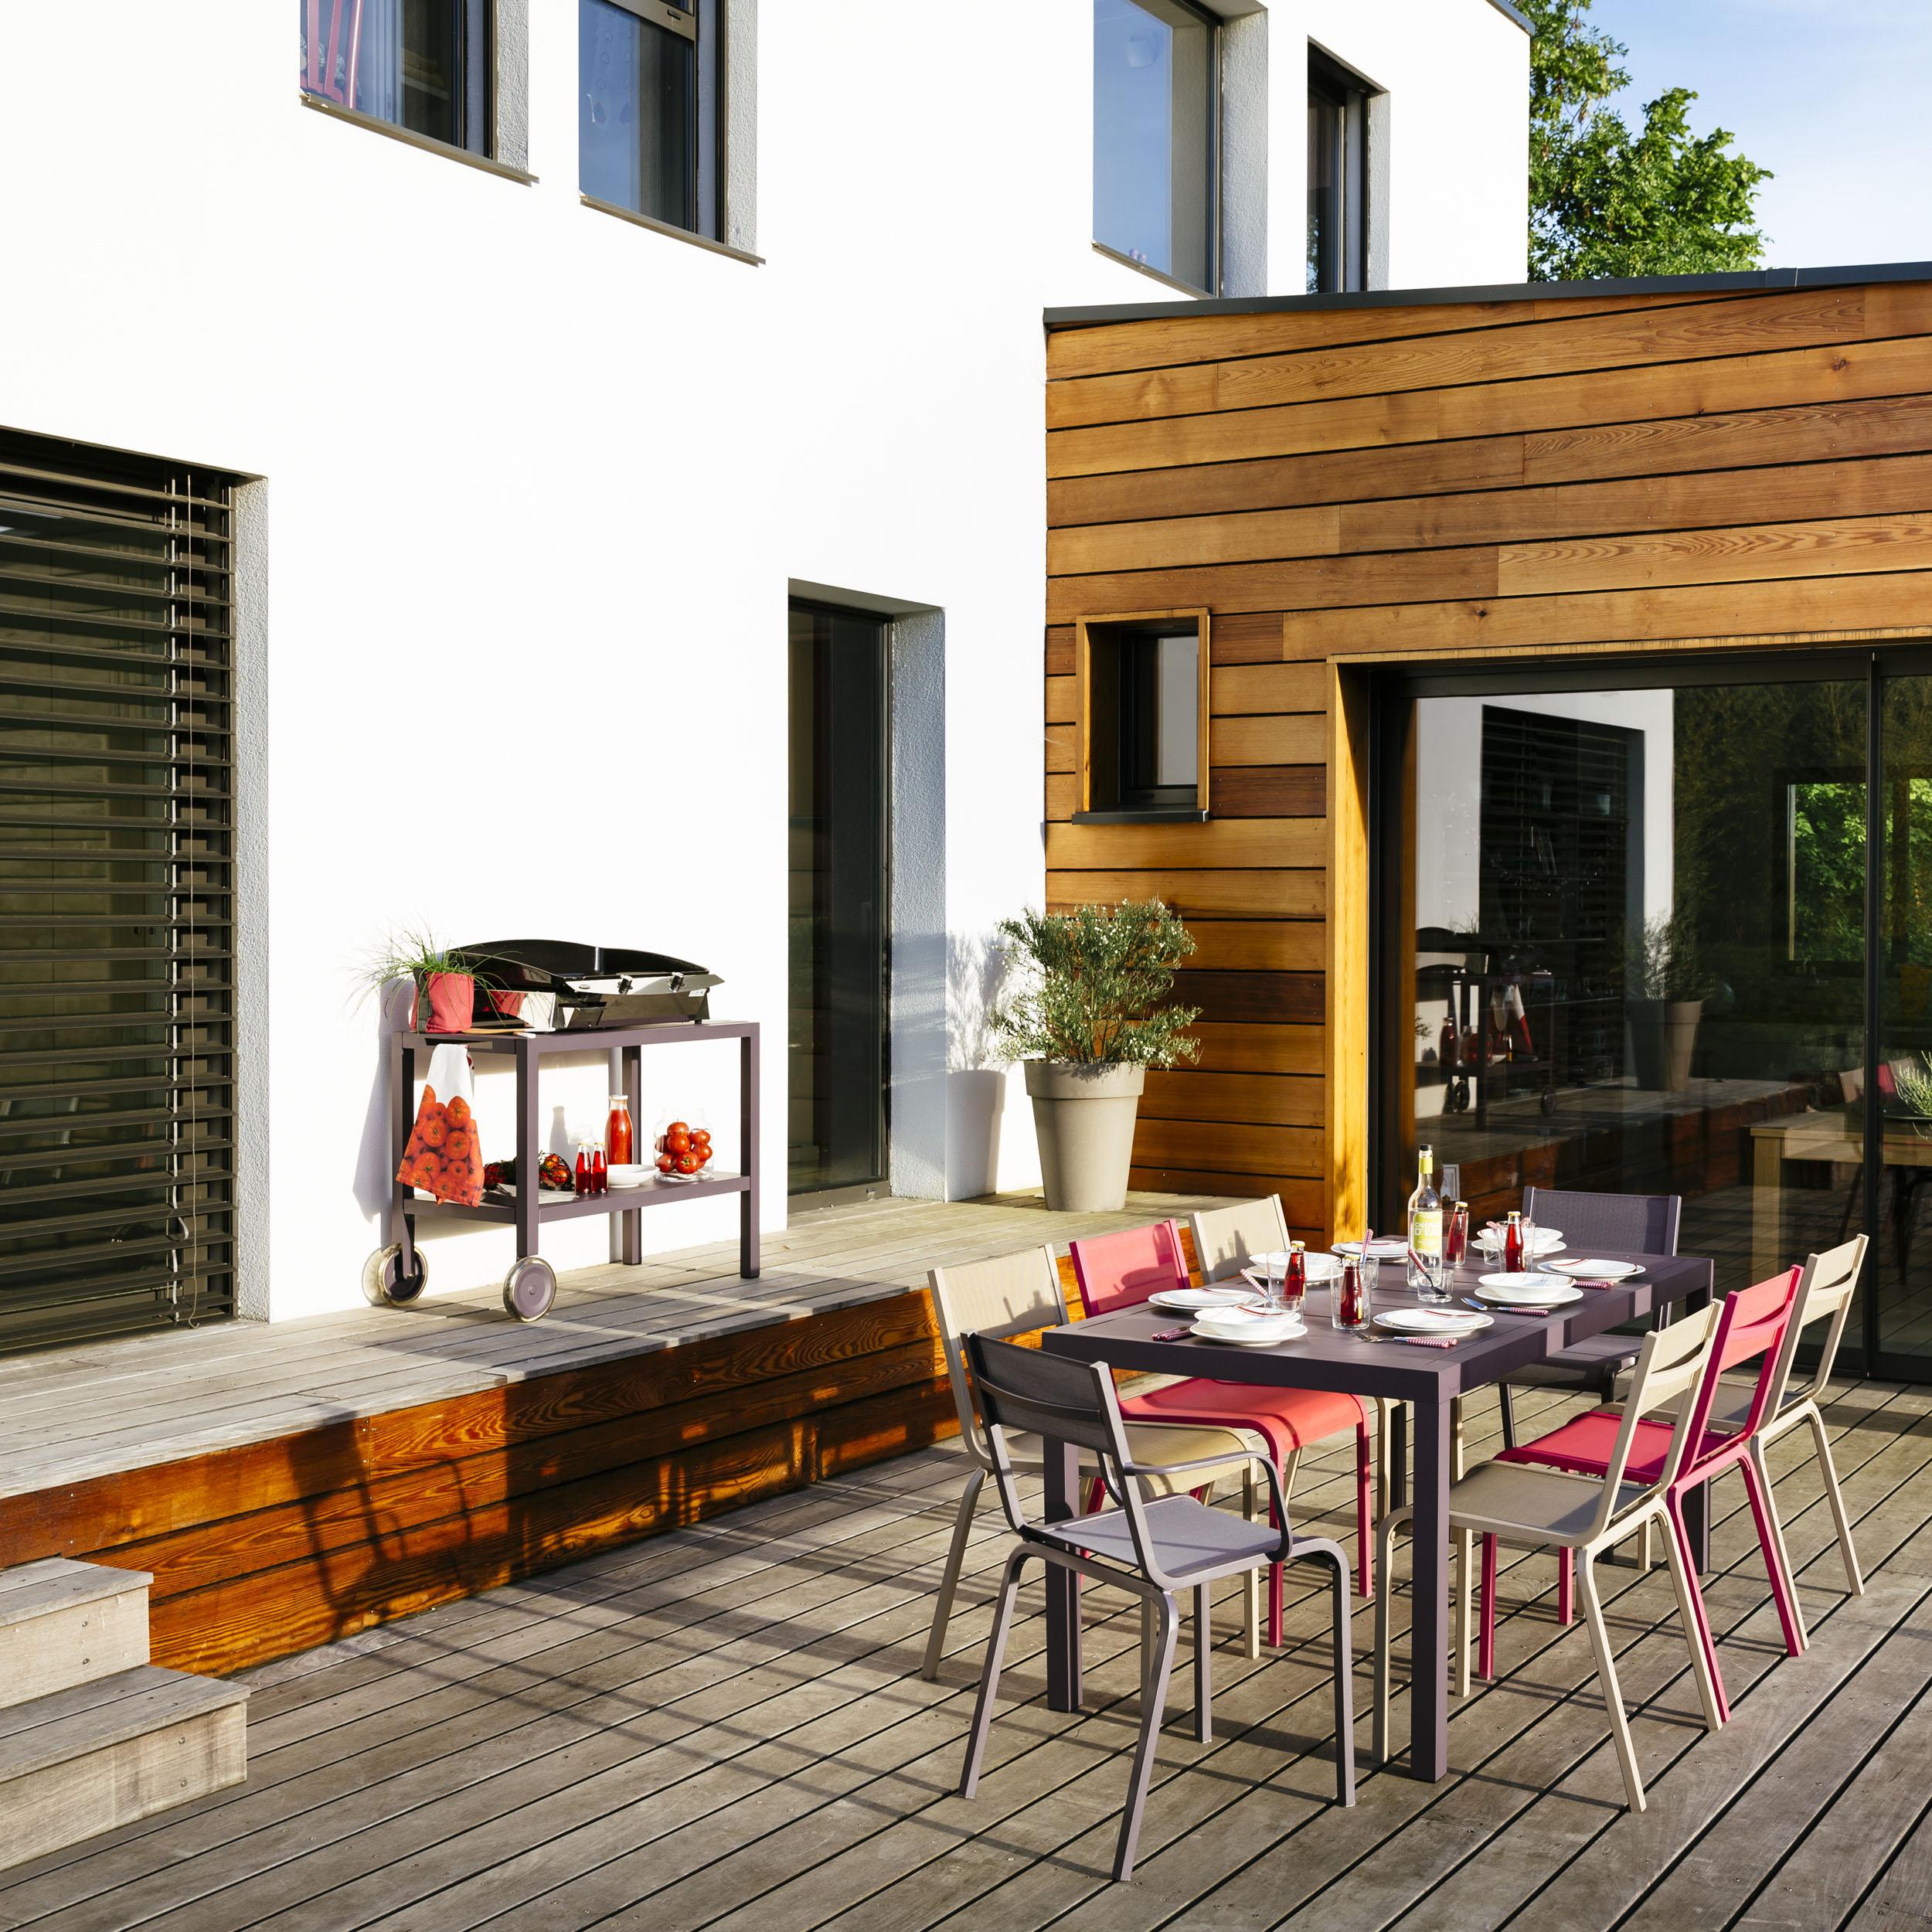 Bereit für jede Gartenparty #beistelltisch #terrasse #ablage #gartenmöbel #gartentisch #tisch #terrassenmöbel ©Fermob